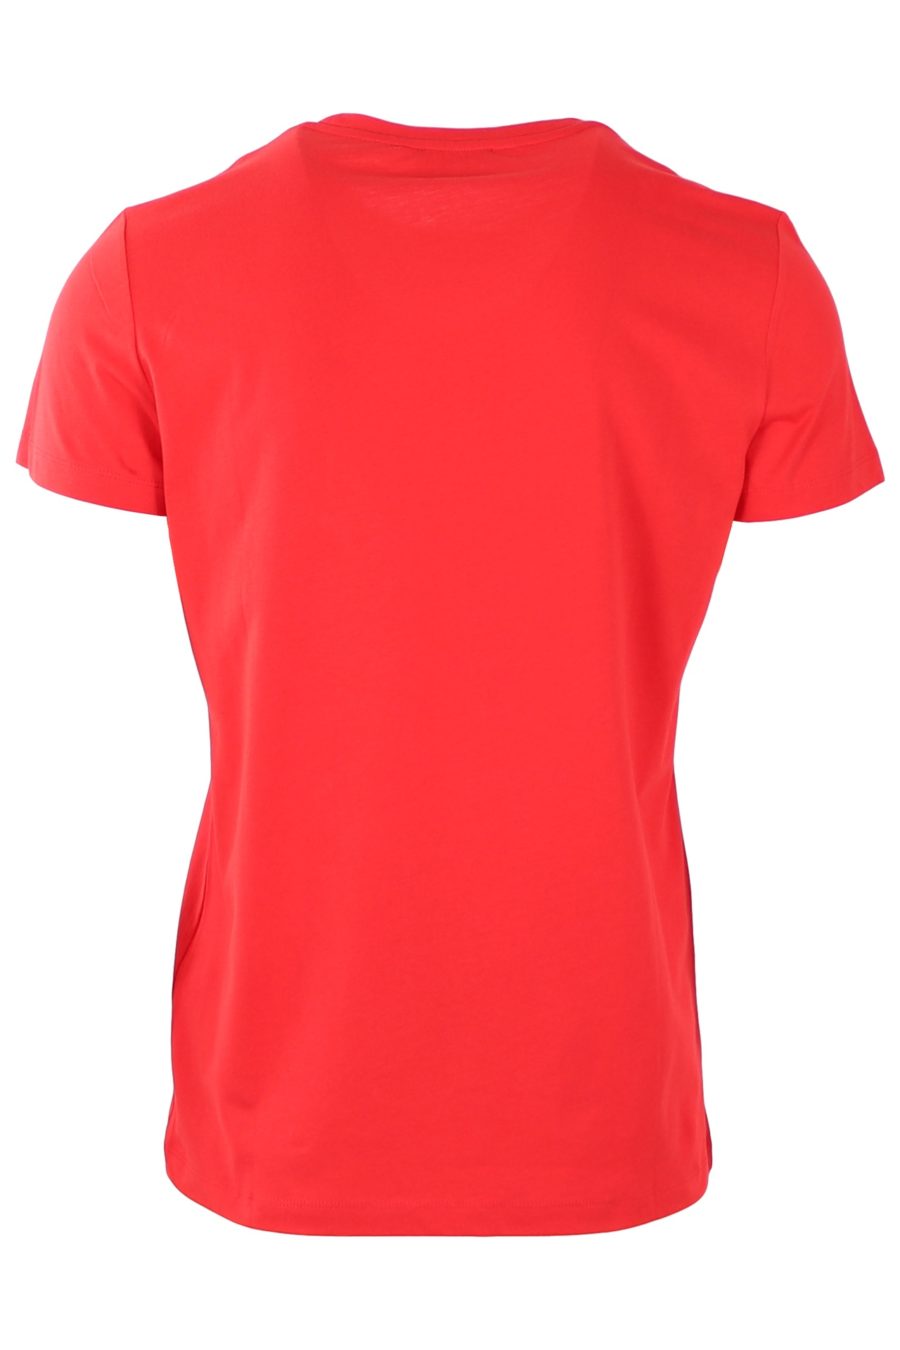 Camiseta Balmain roja con logo afelpado - 6f00f1666a92298ad1da17a77efac9128e6d9b9c